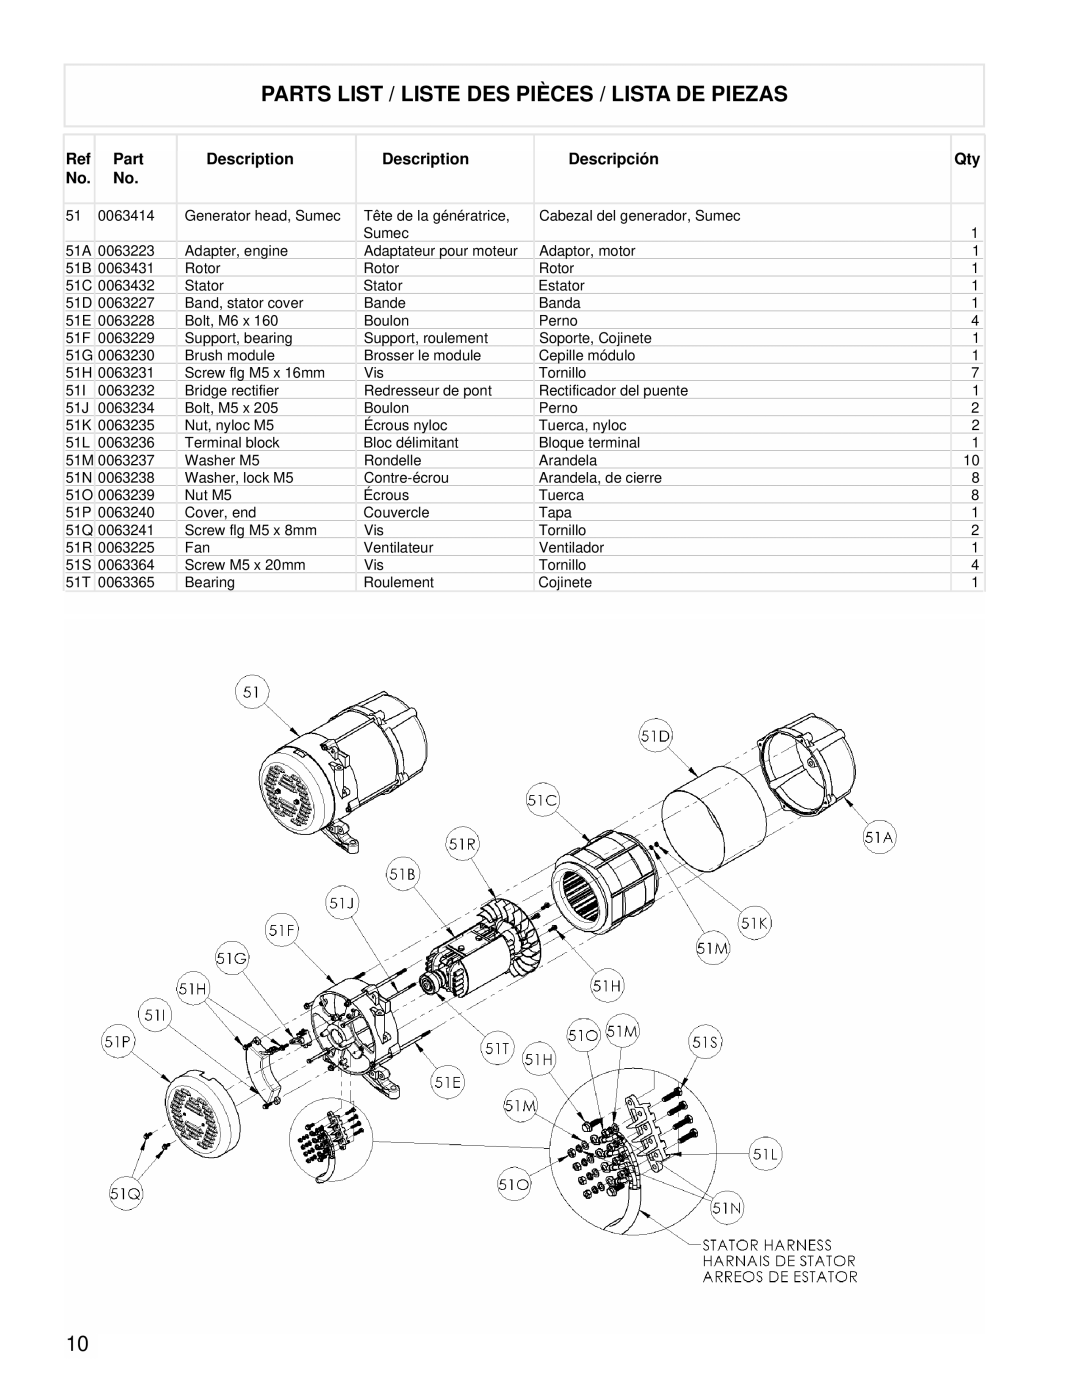 Powermate PM0525312.02 manual Parts List / Liste Des Pièces / Lista De Piezas, 0063414 